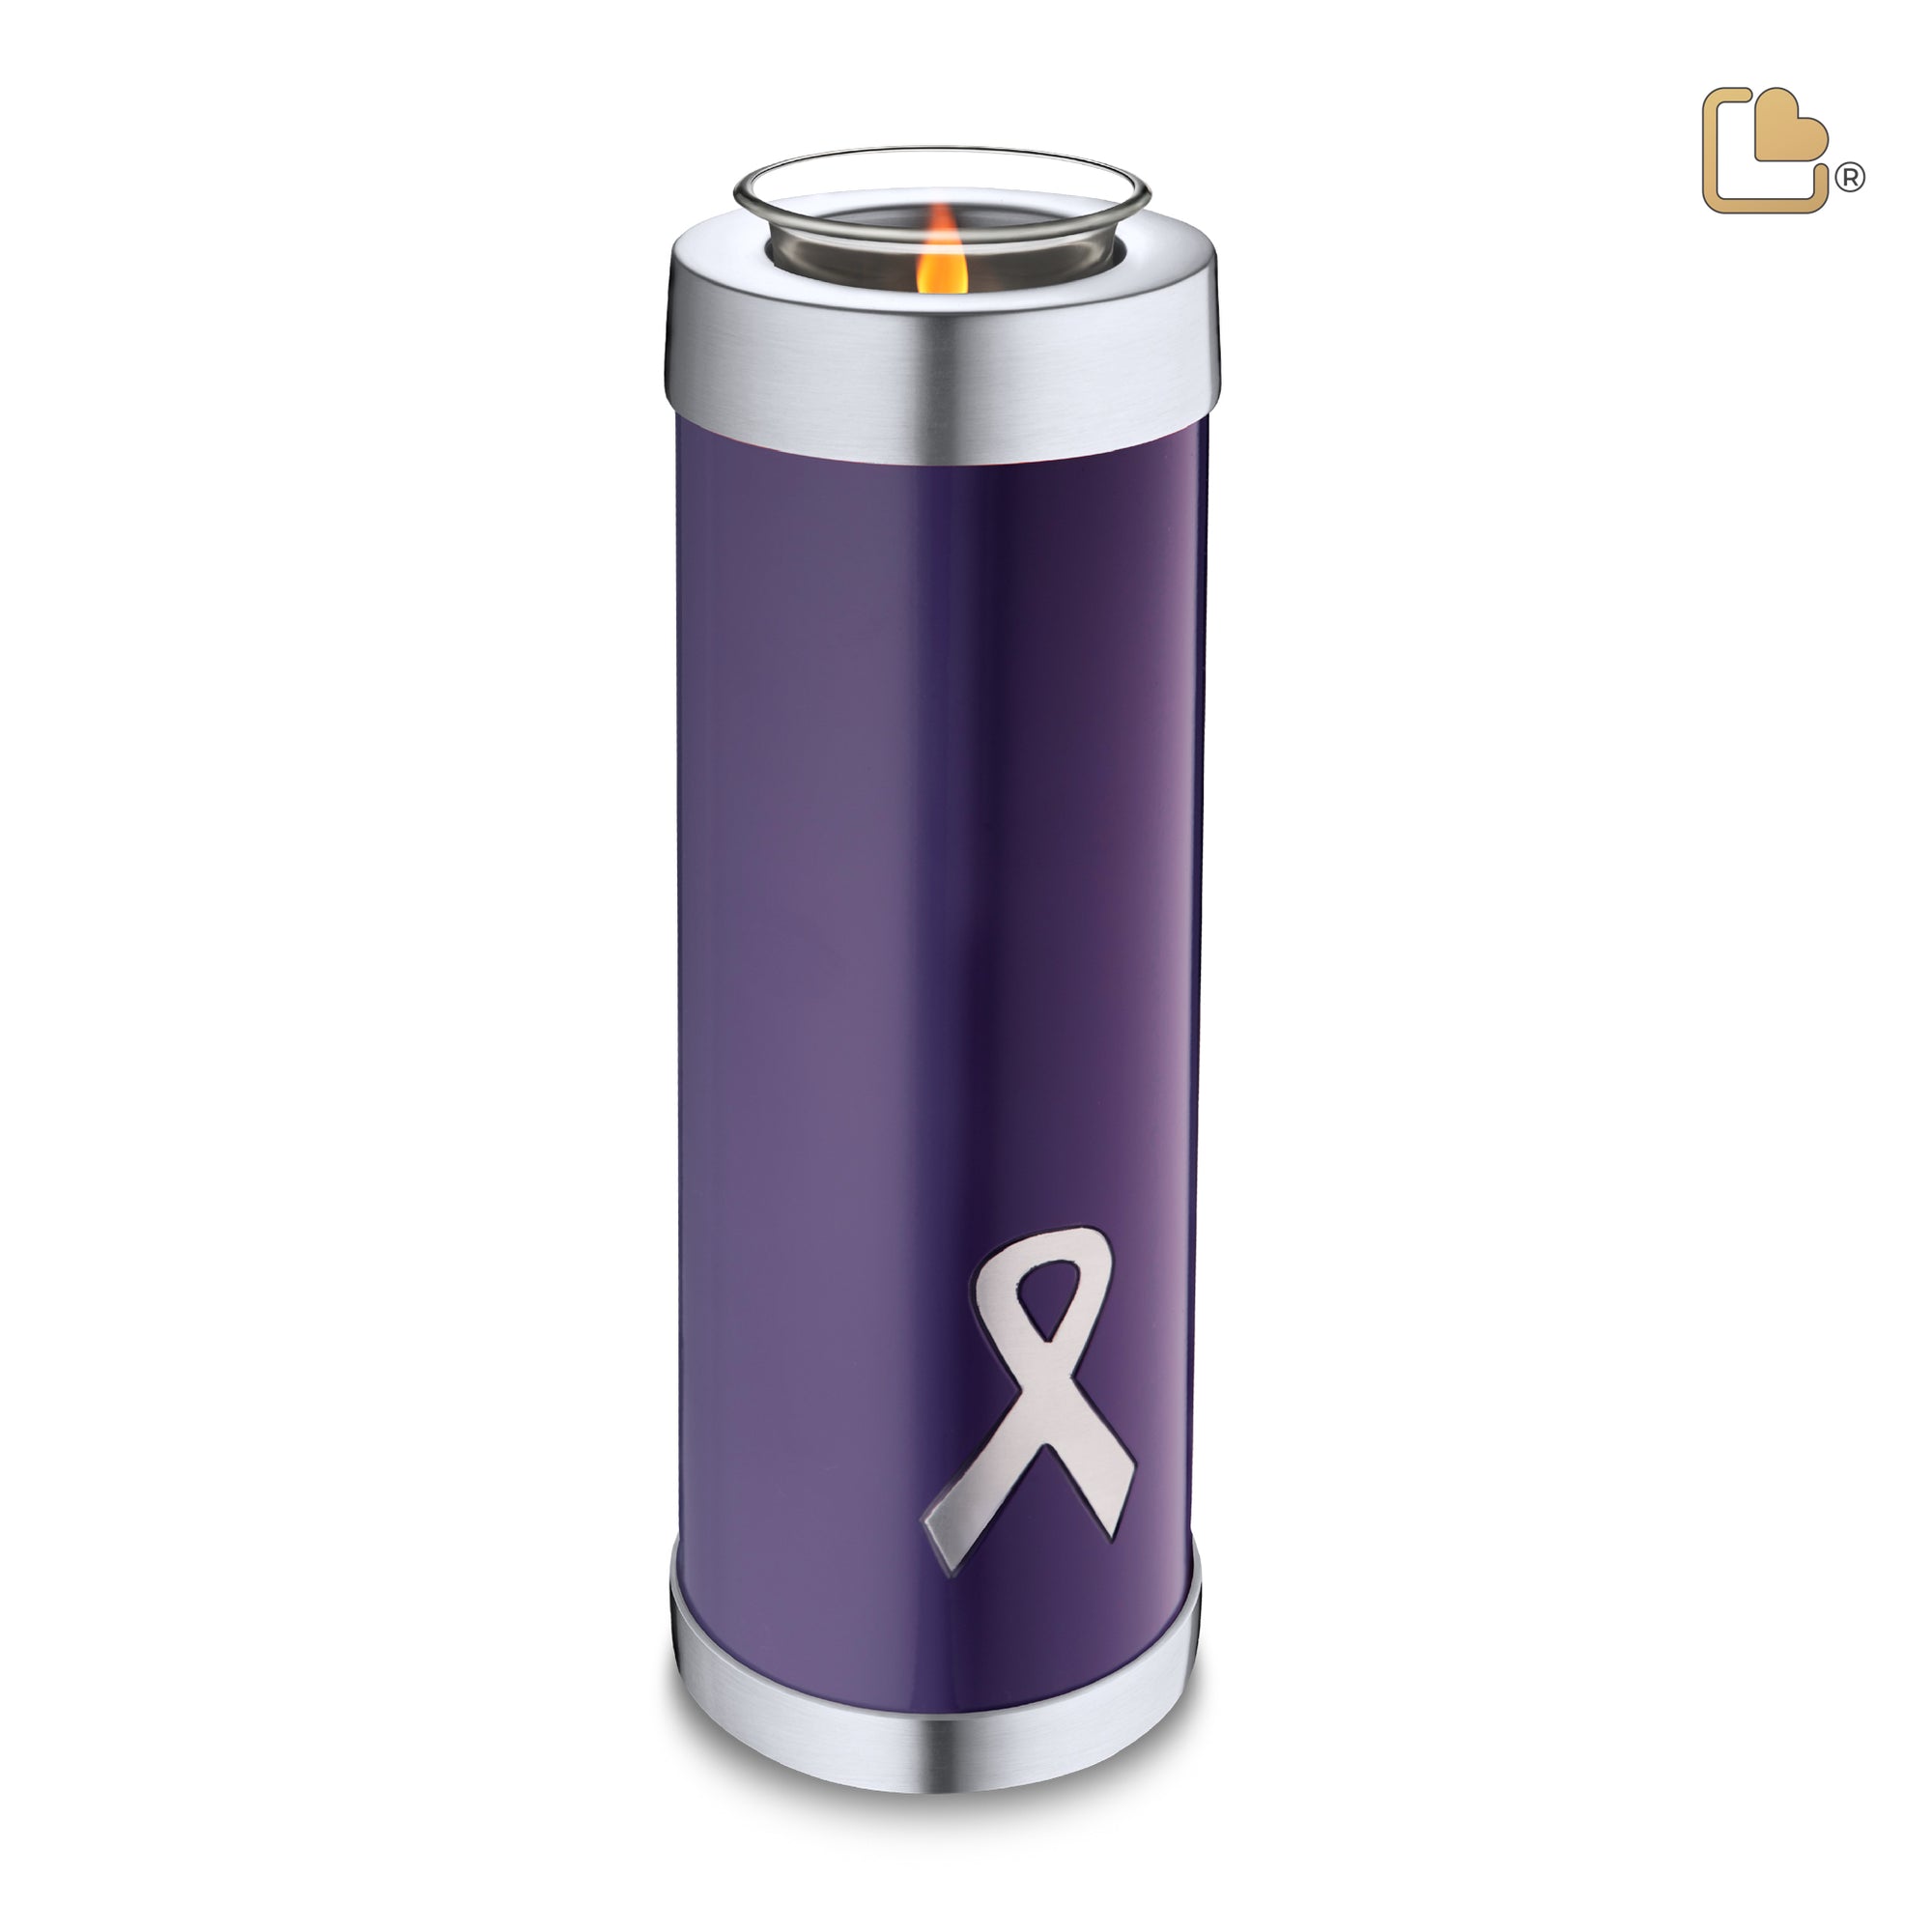 T903   Awareness Tall Tealight Urn Purple & Bru Pewter